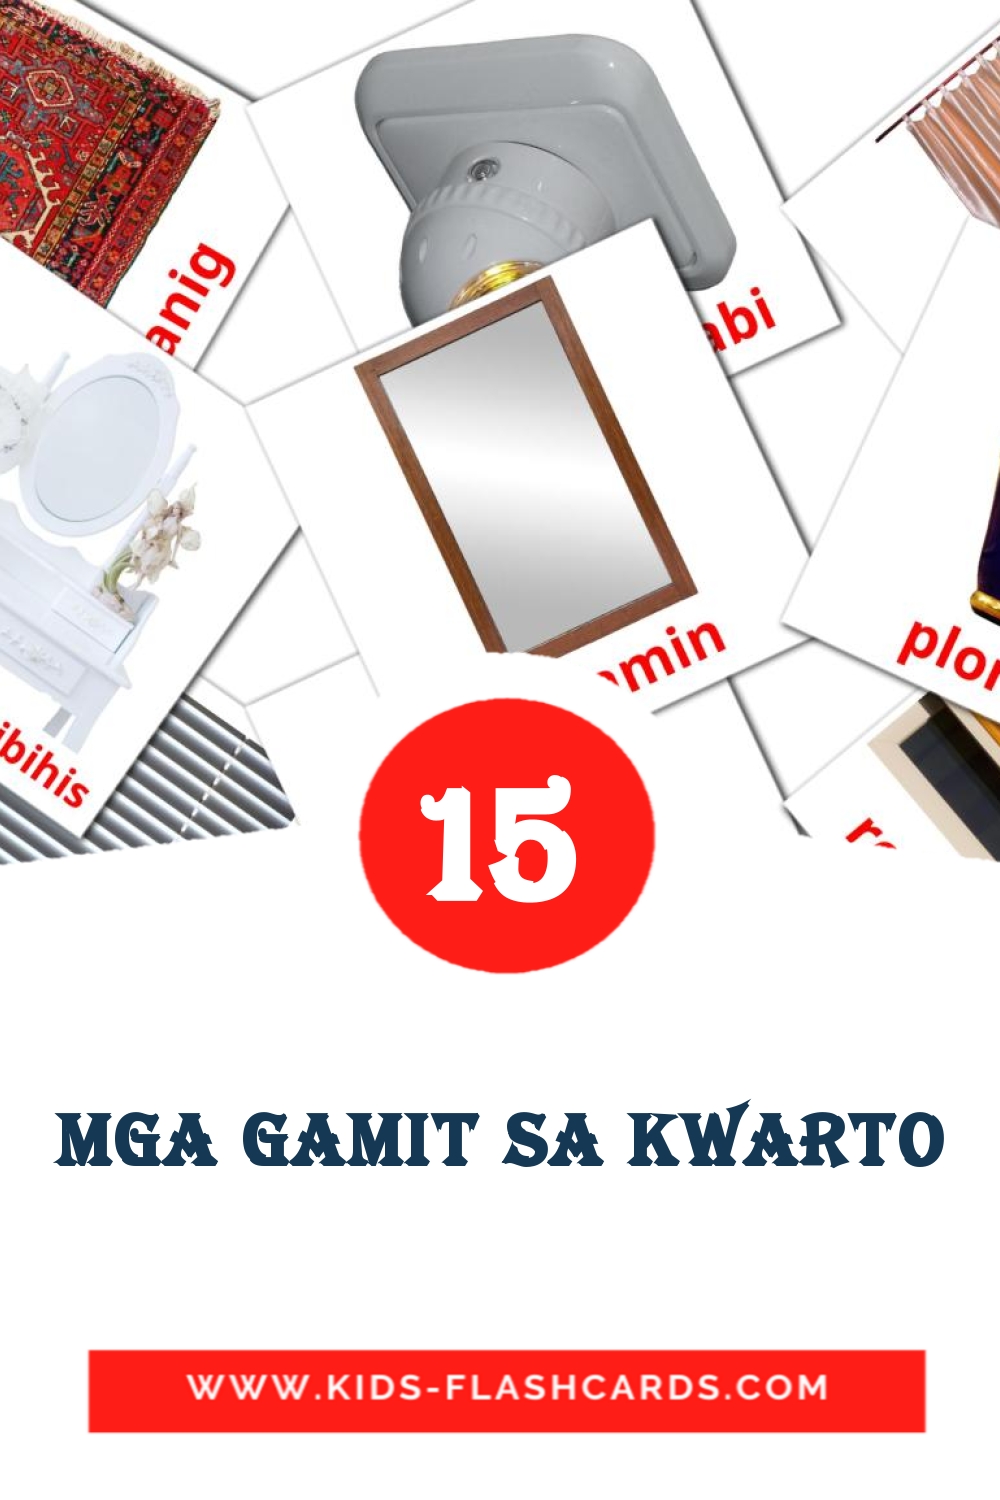 15 Mga gamit sa kwarto fotokaarten voor kleuters in het filipino